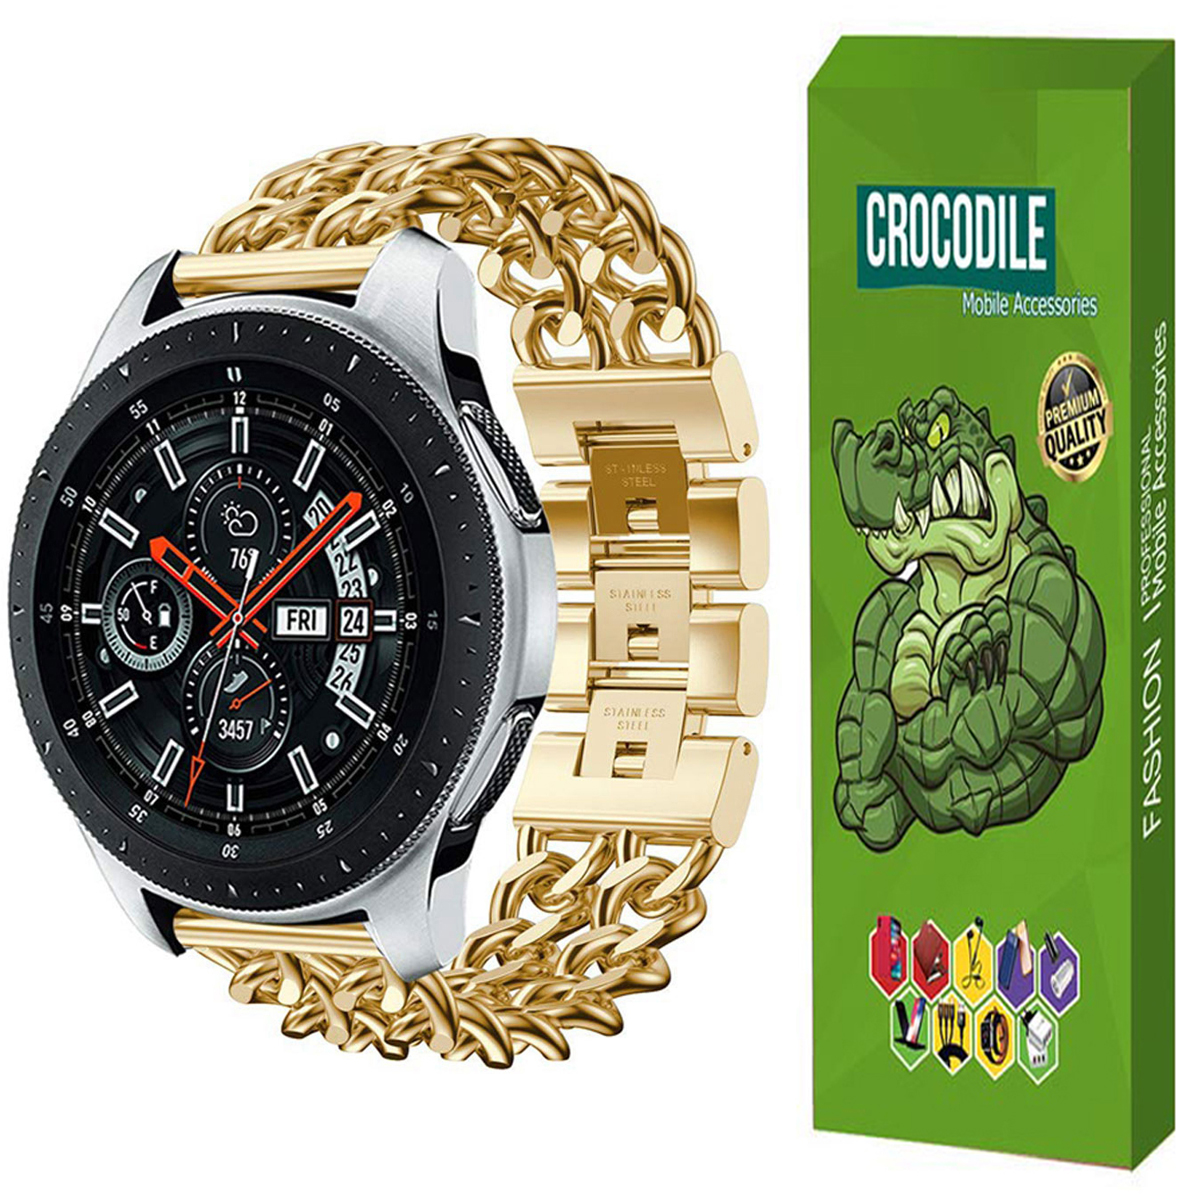 بند کروکودیل مدل Cb-Cartier مناسب برای ساعت هوشمند شیائومی Watch S1 Active